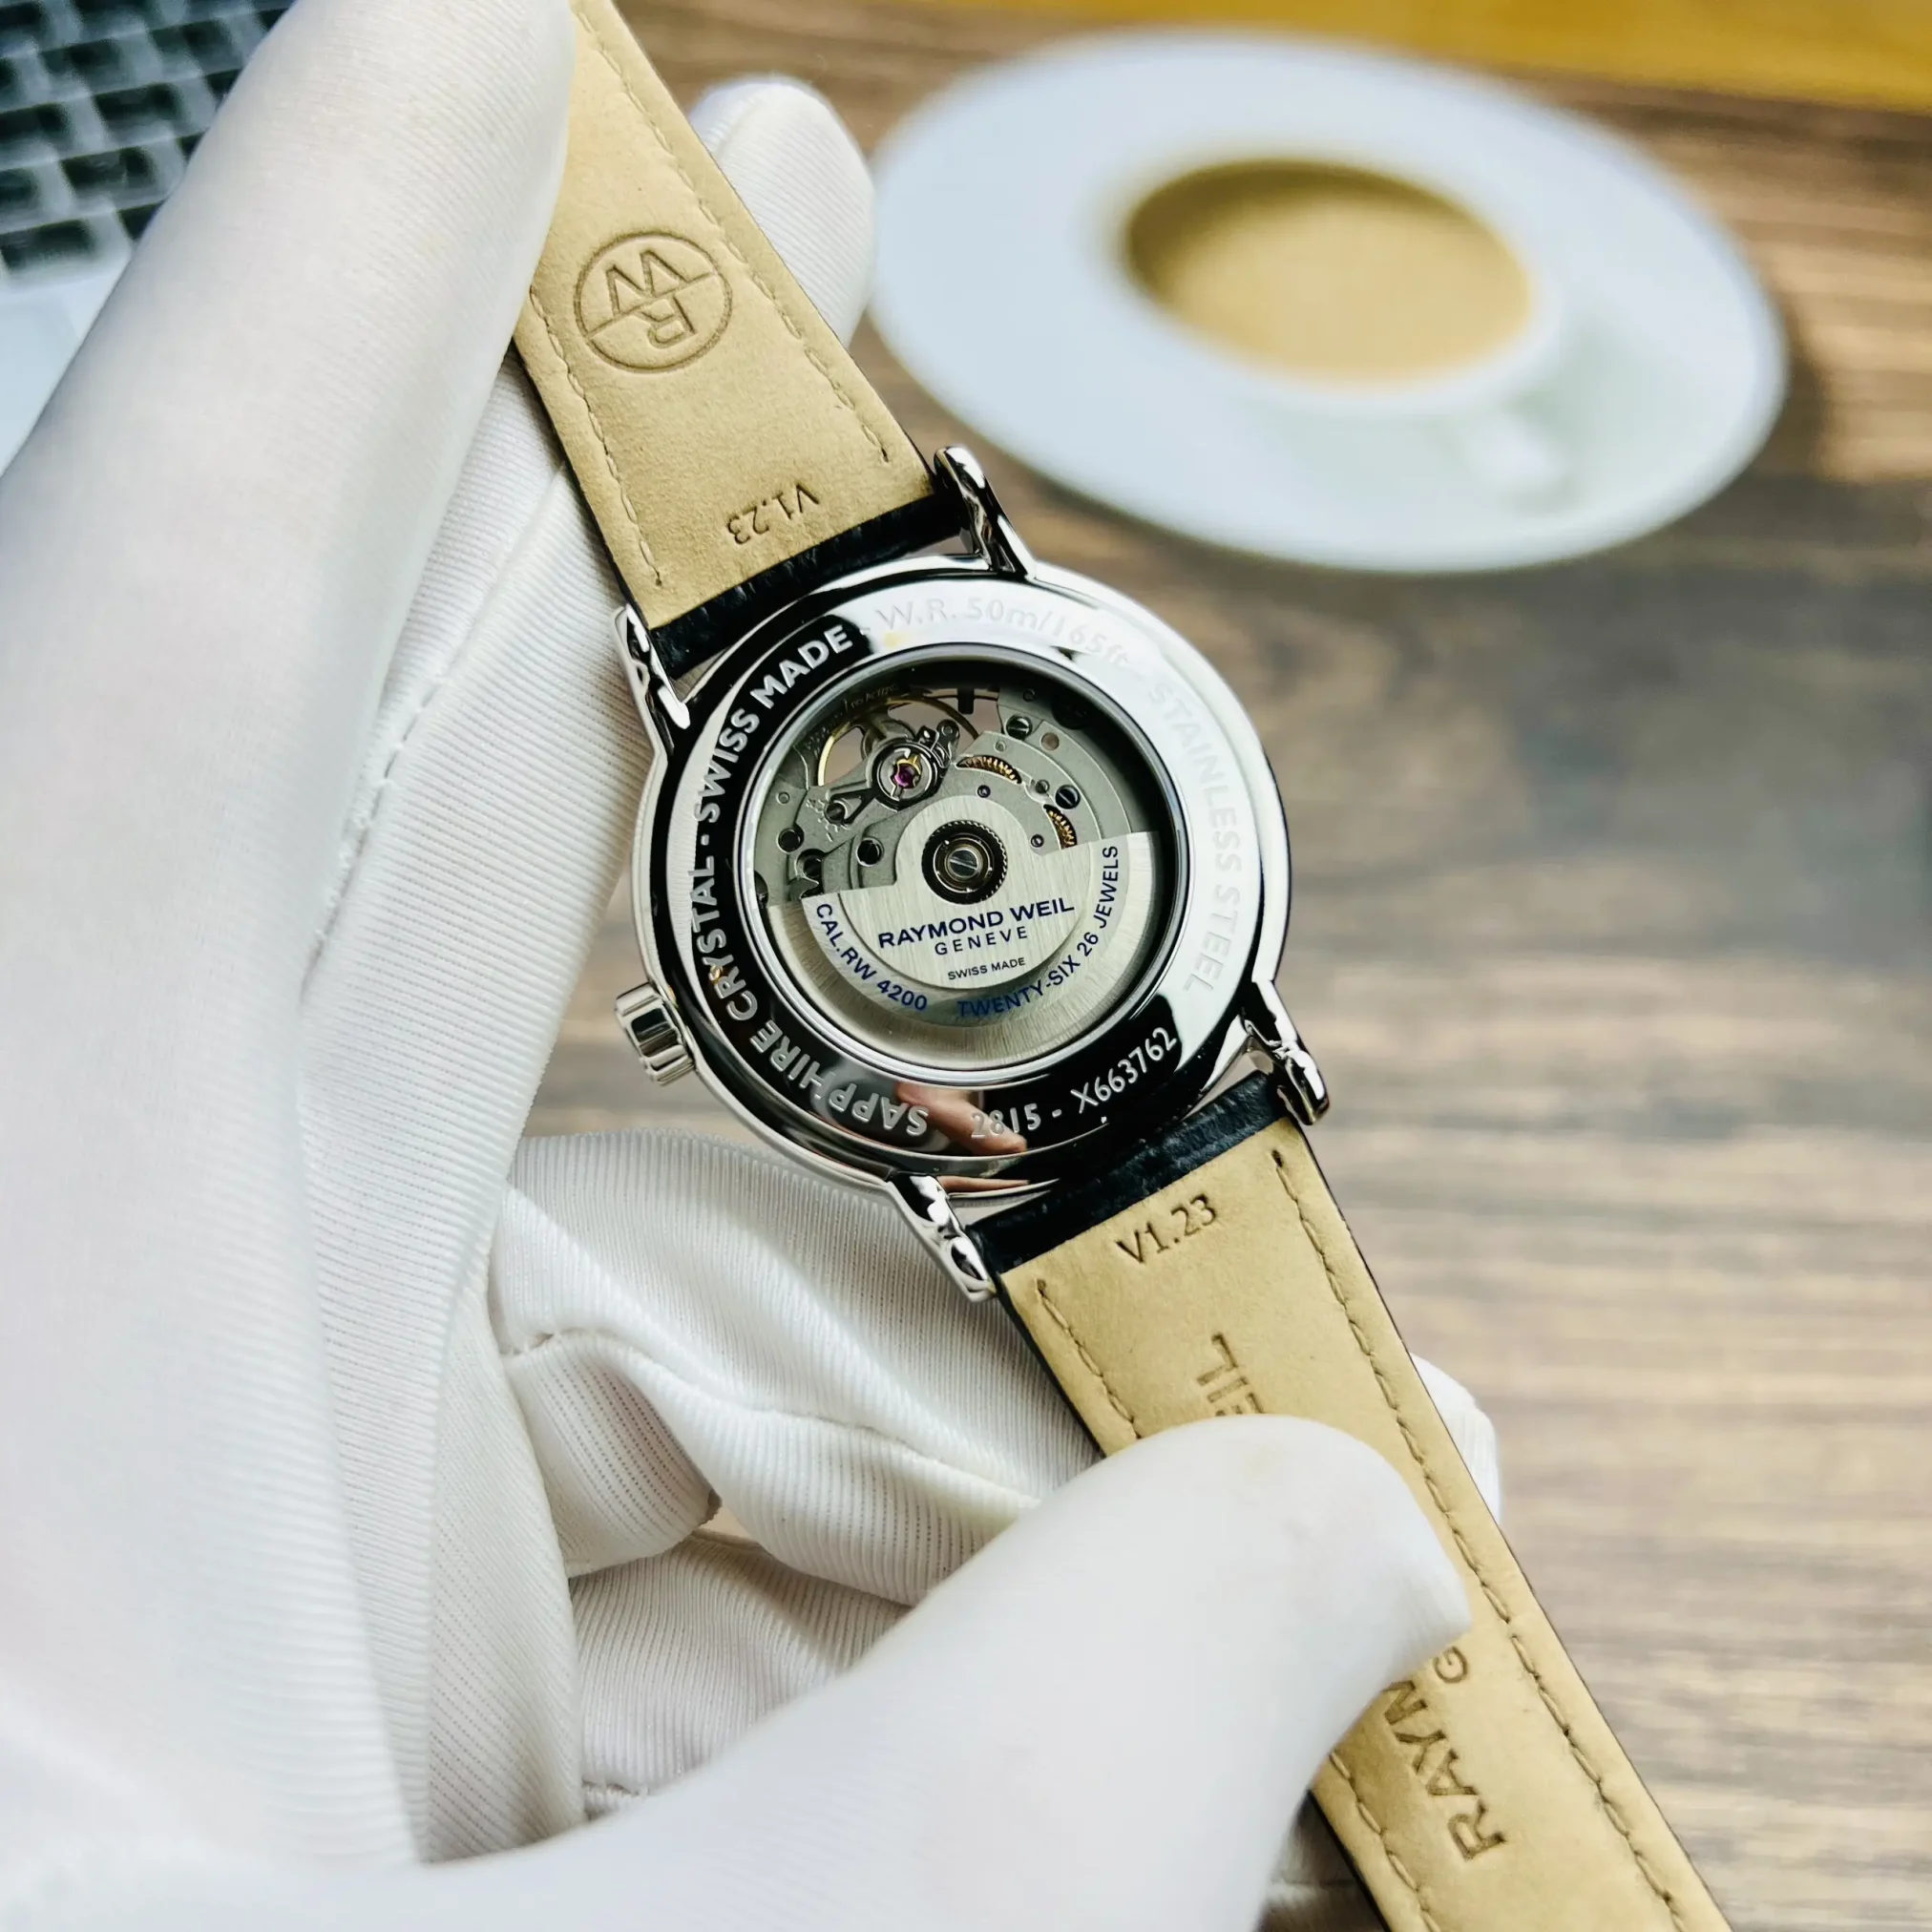 Đồng hồ Raymond Weil Maestro 2815-STC-65001 mặt số màu trắng. Thiết kế lộ cơ. Dây đeo bằng da. Thân vỏ bằng thép.